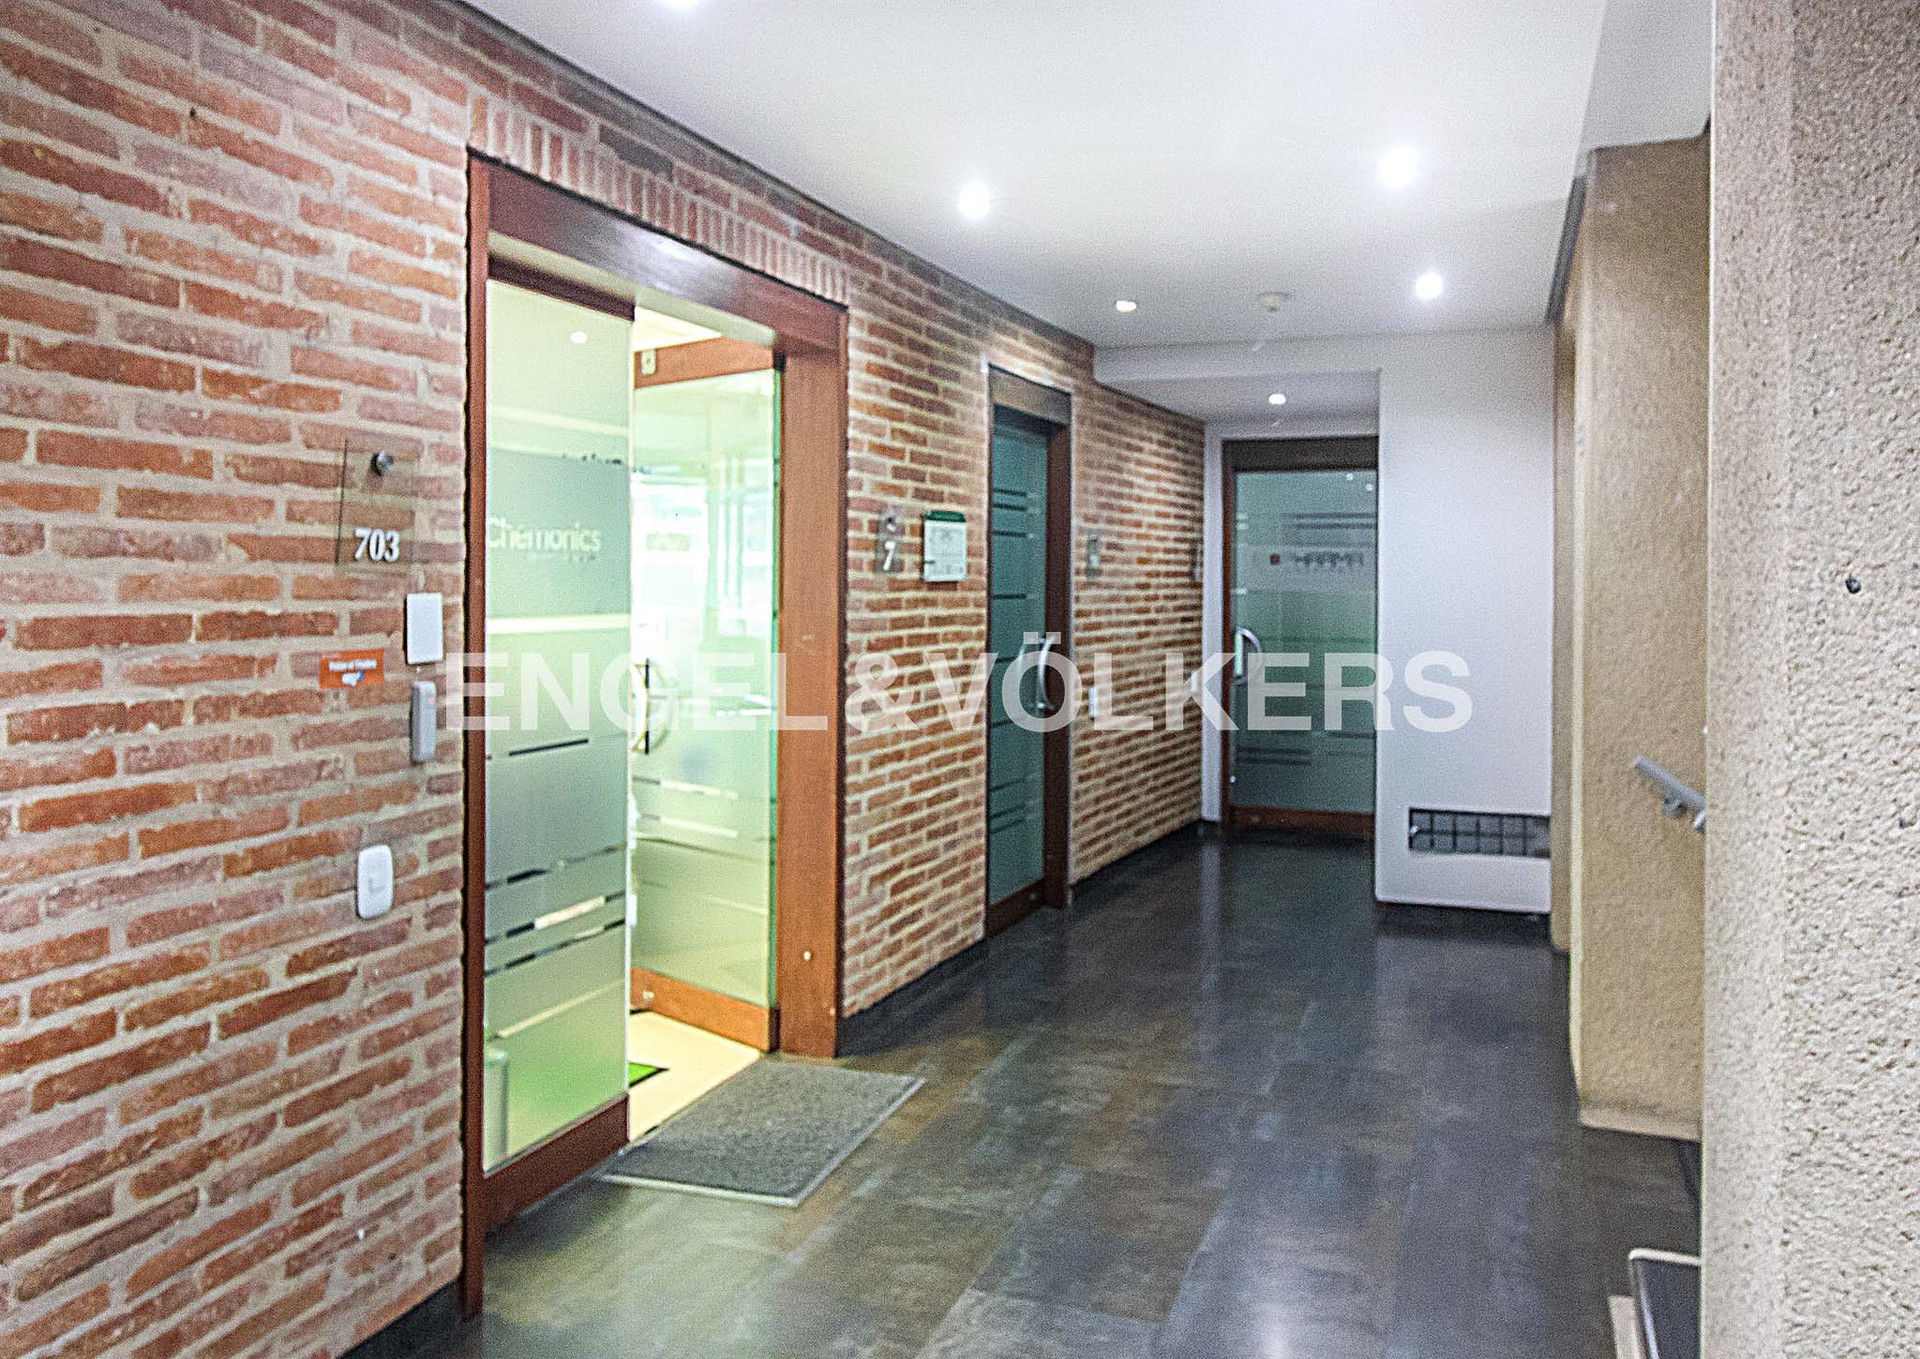 Inversión / Residencial inversión en La Cabrera - Retiro - Nogal - 10 - Vista del corredor del piso 7.jpg